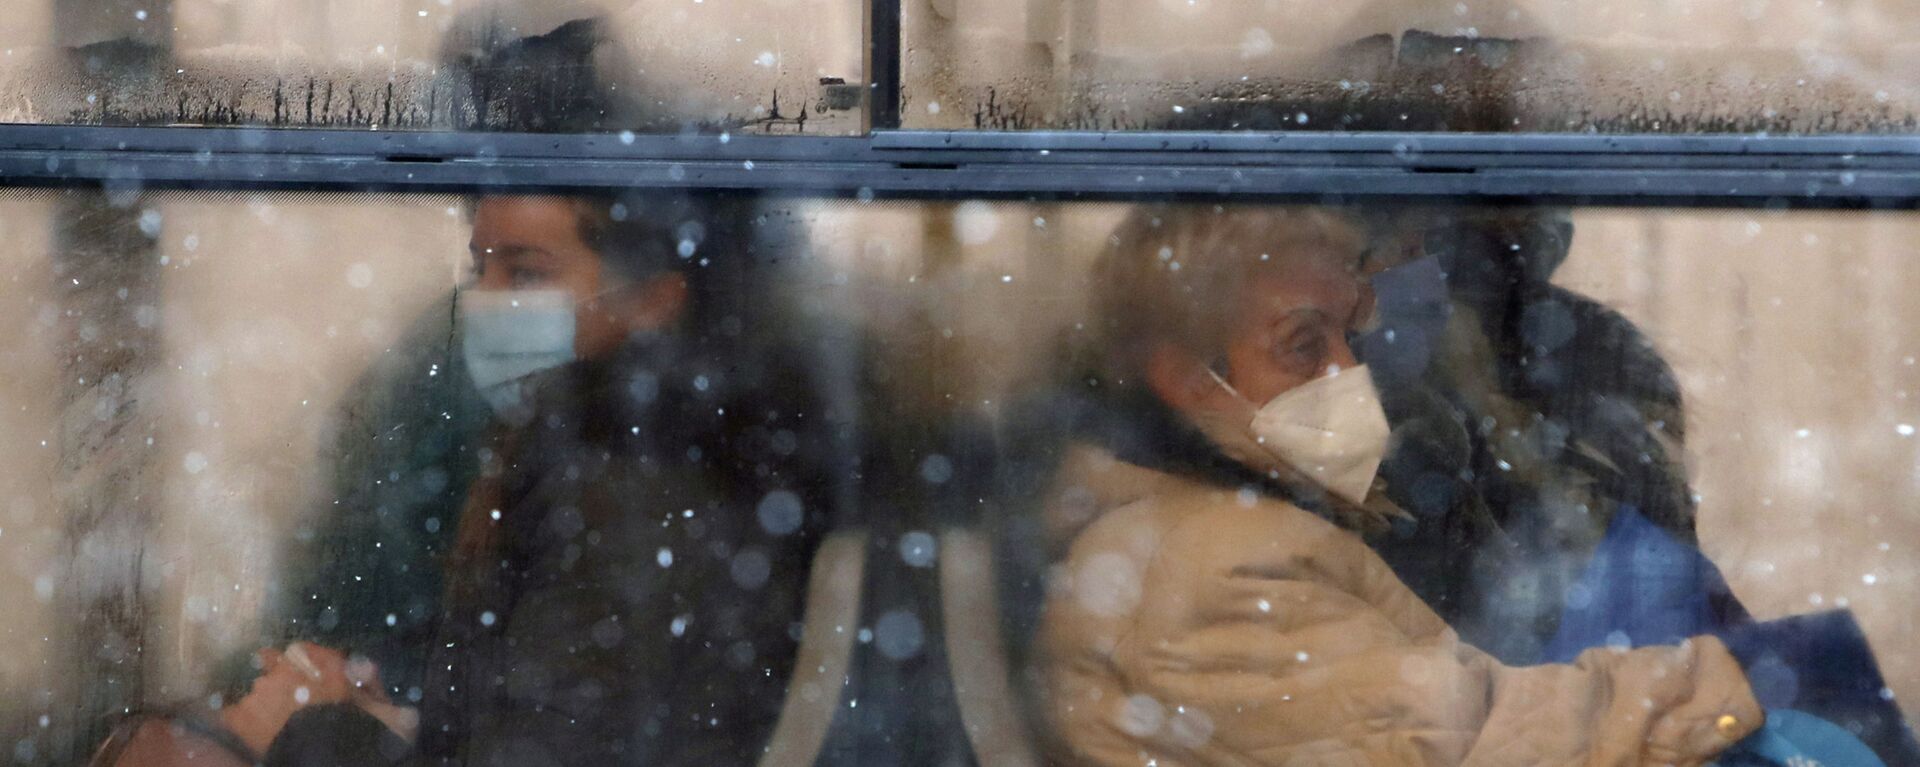 أشخاص يرتدون كمامات للوقاية من فيروس كورونا يجلسون على متن حافلة في بلغراد، صربيا،11 يناير 2021.  - سبوتنيك عربي, 1920, 07.08.2022